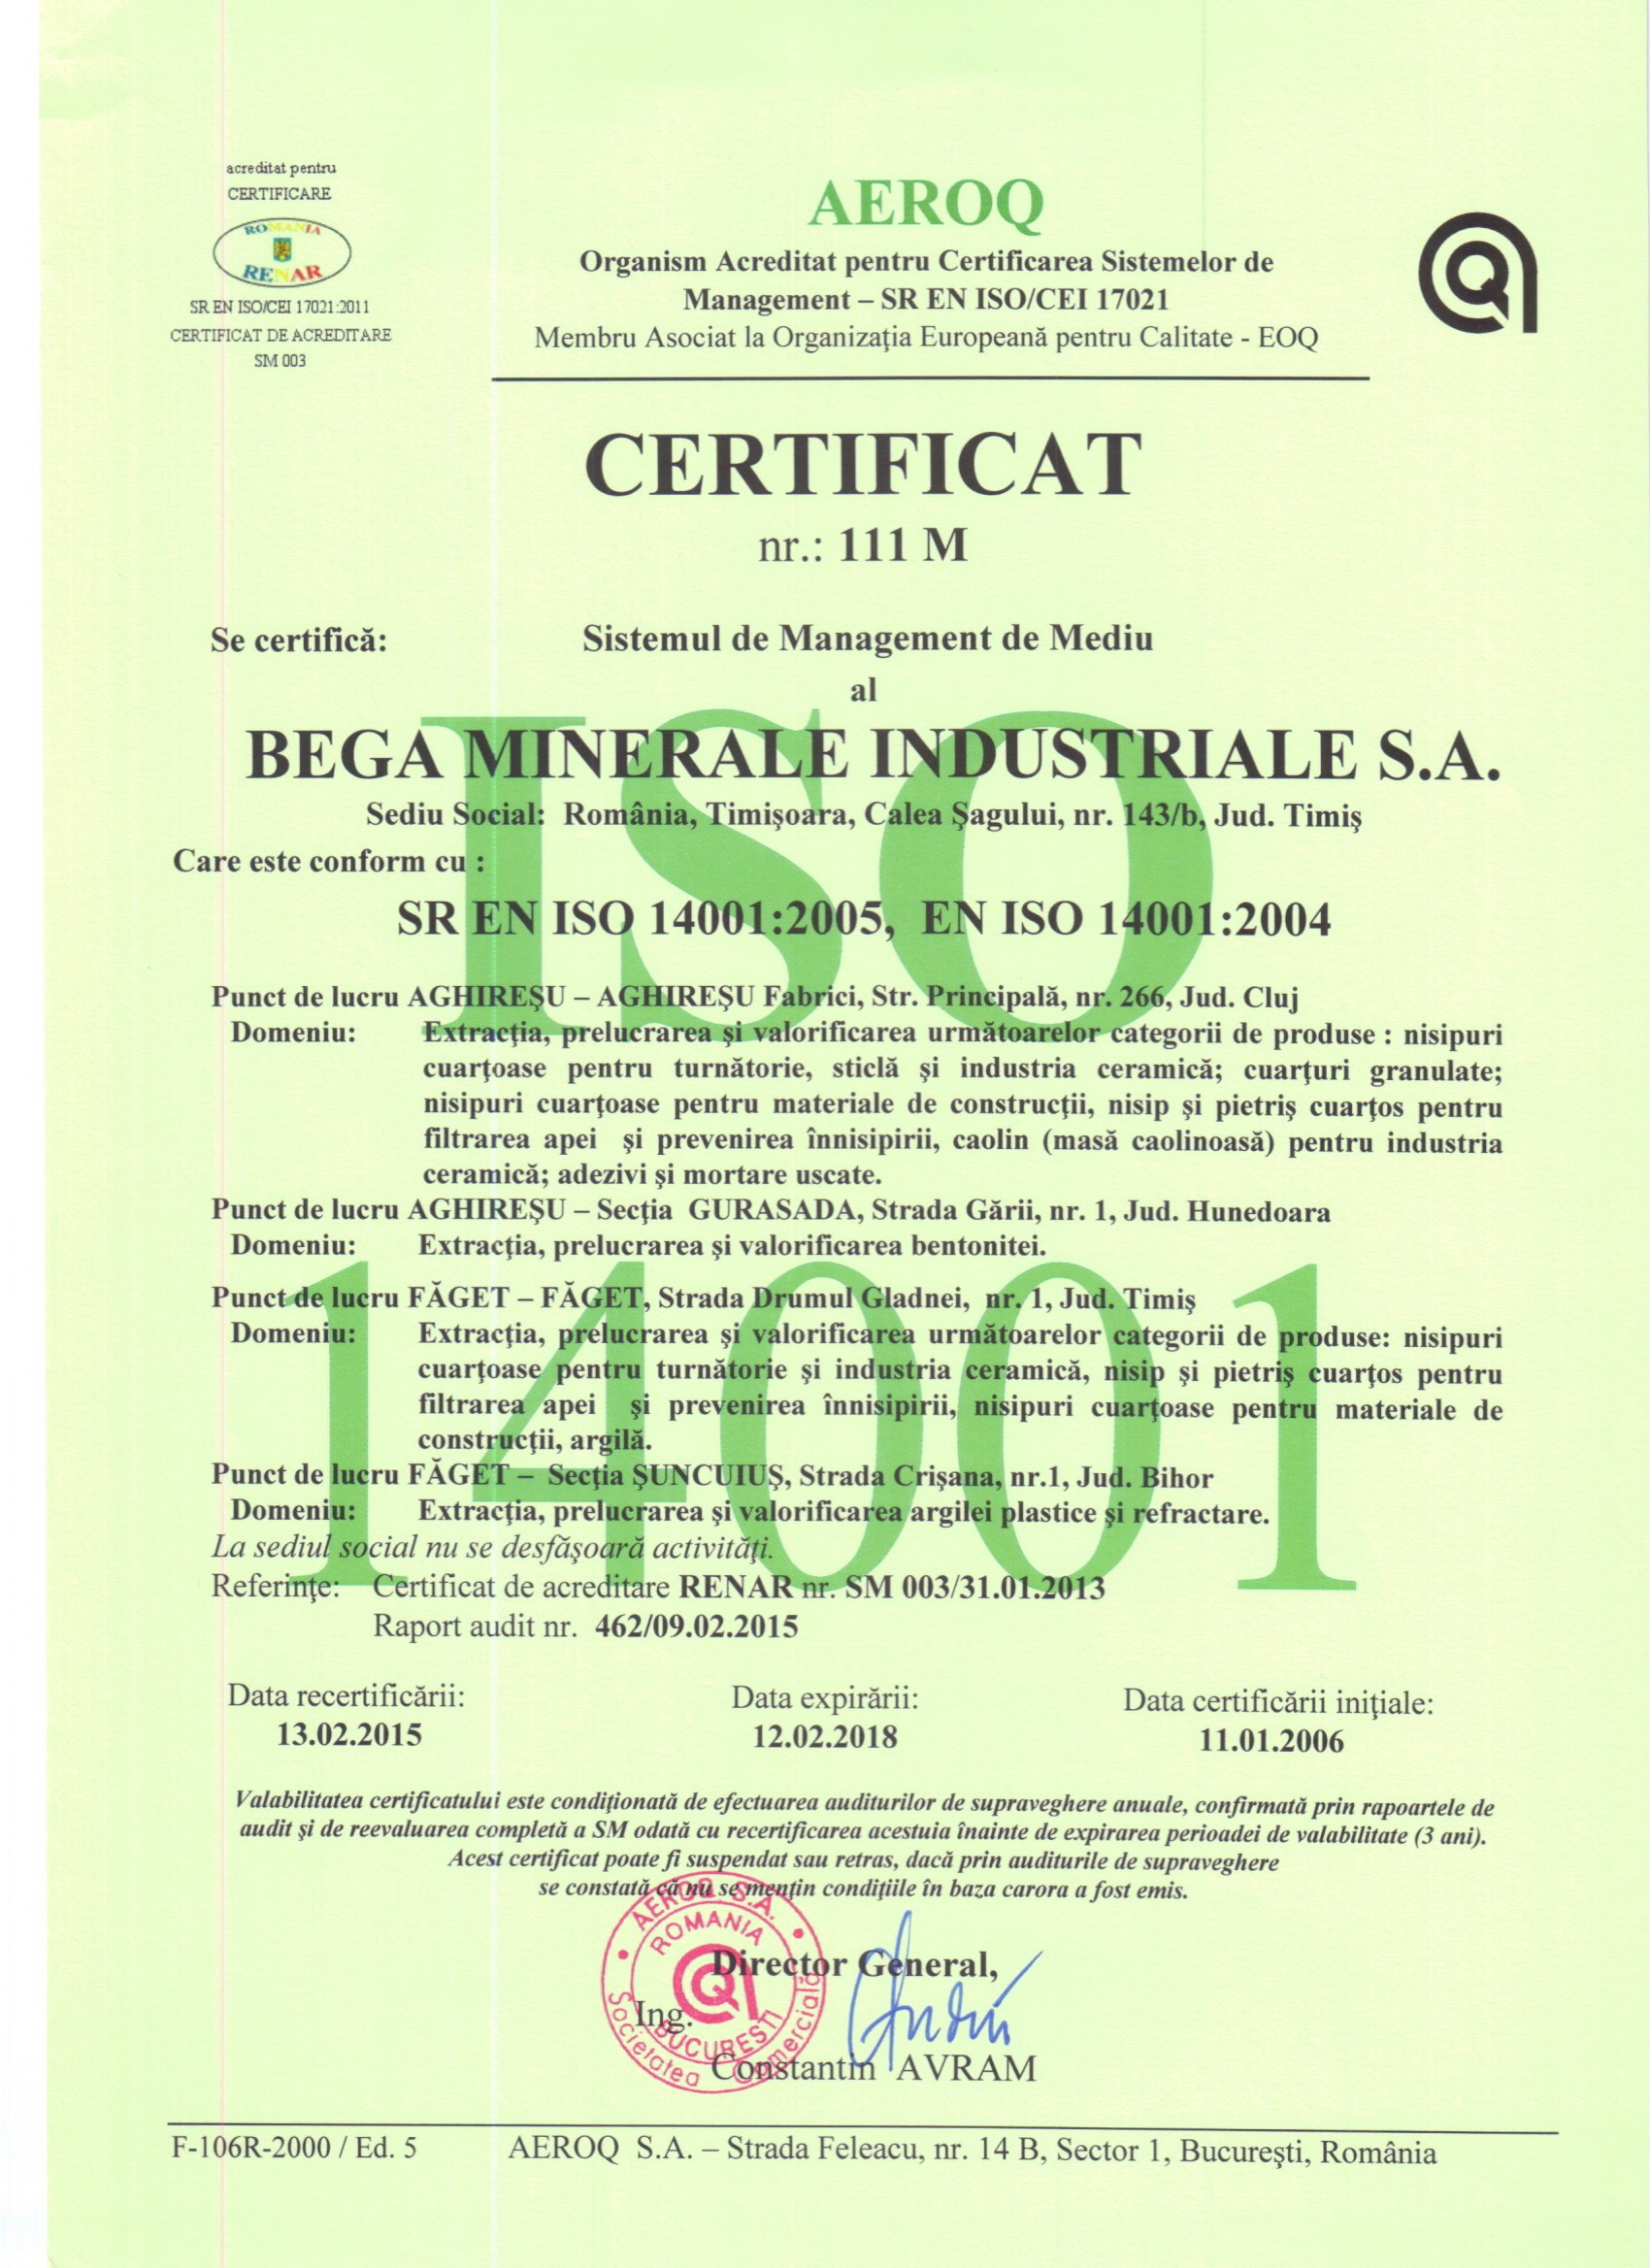 k1pxn_ISO 14001.jpg